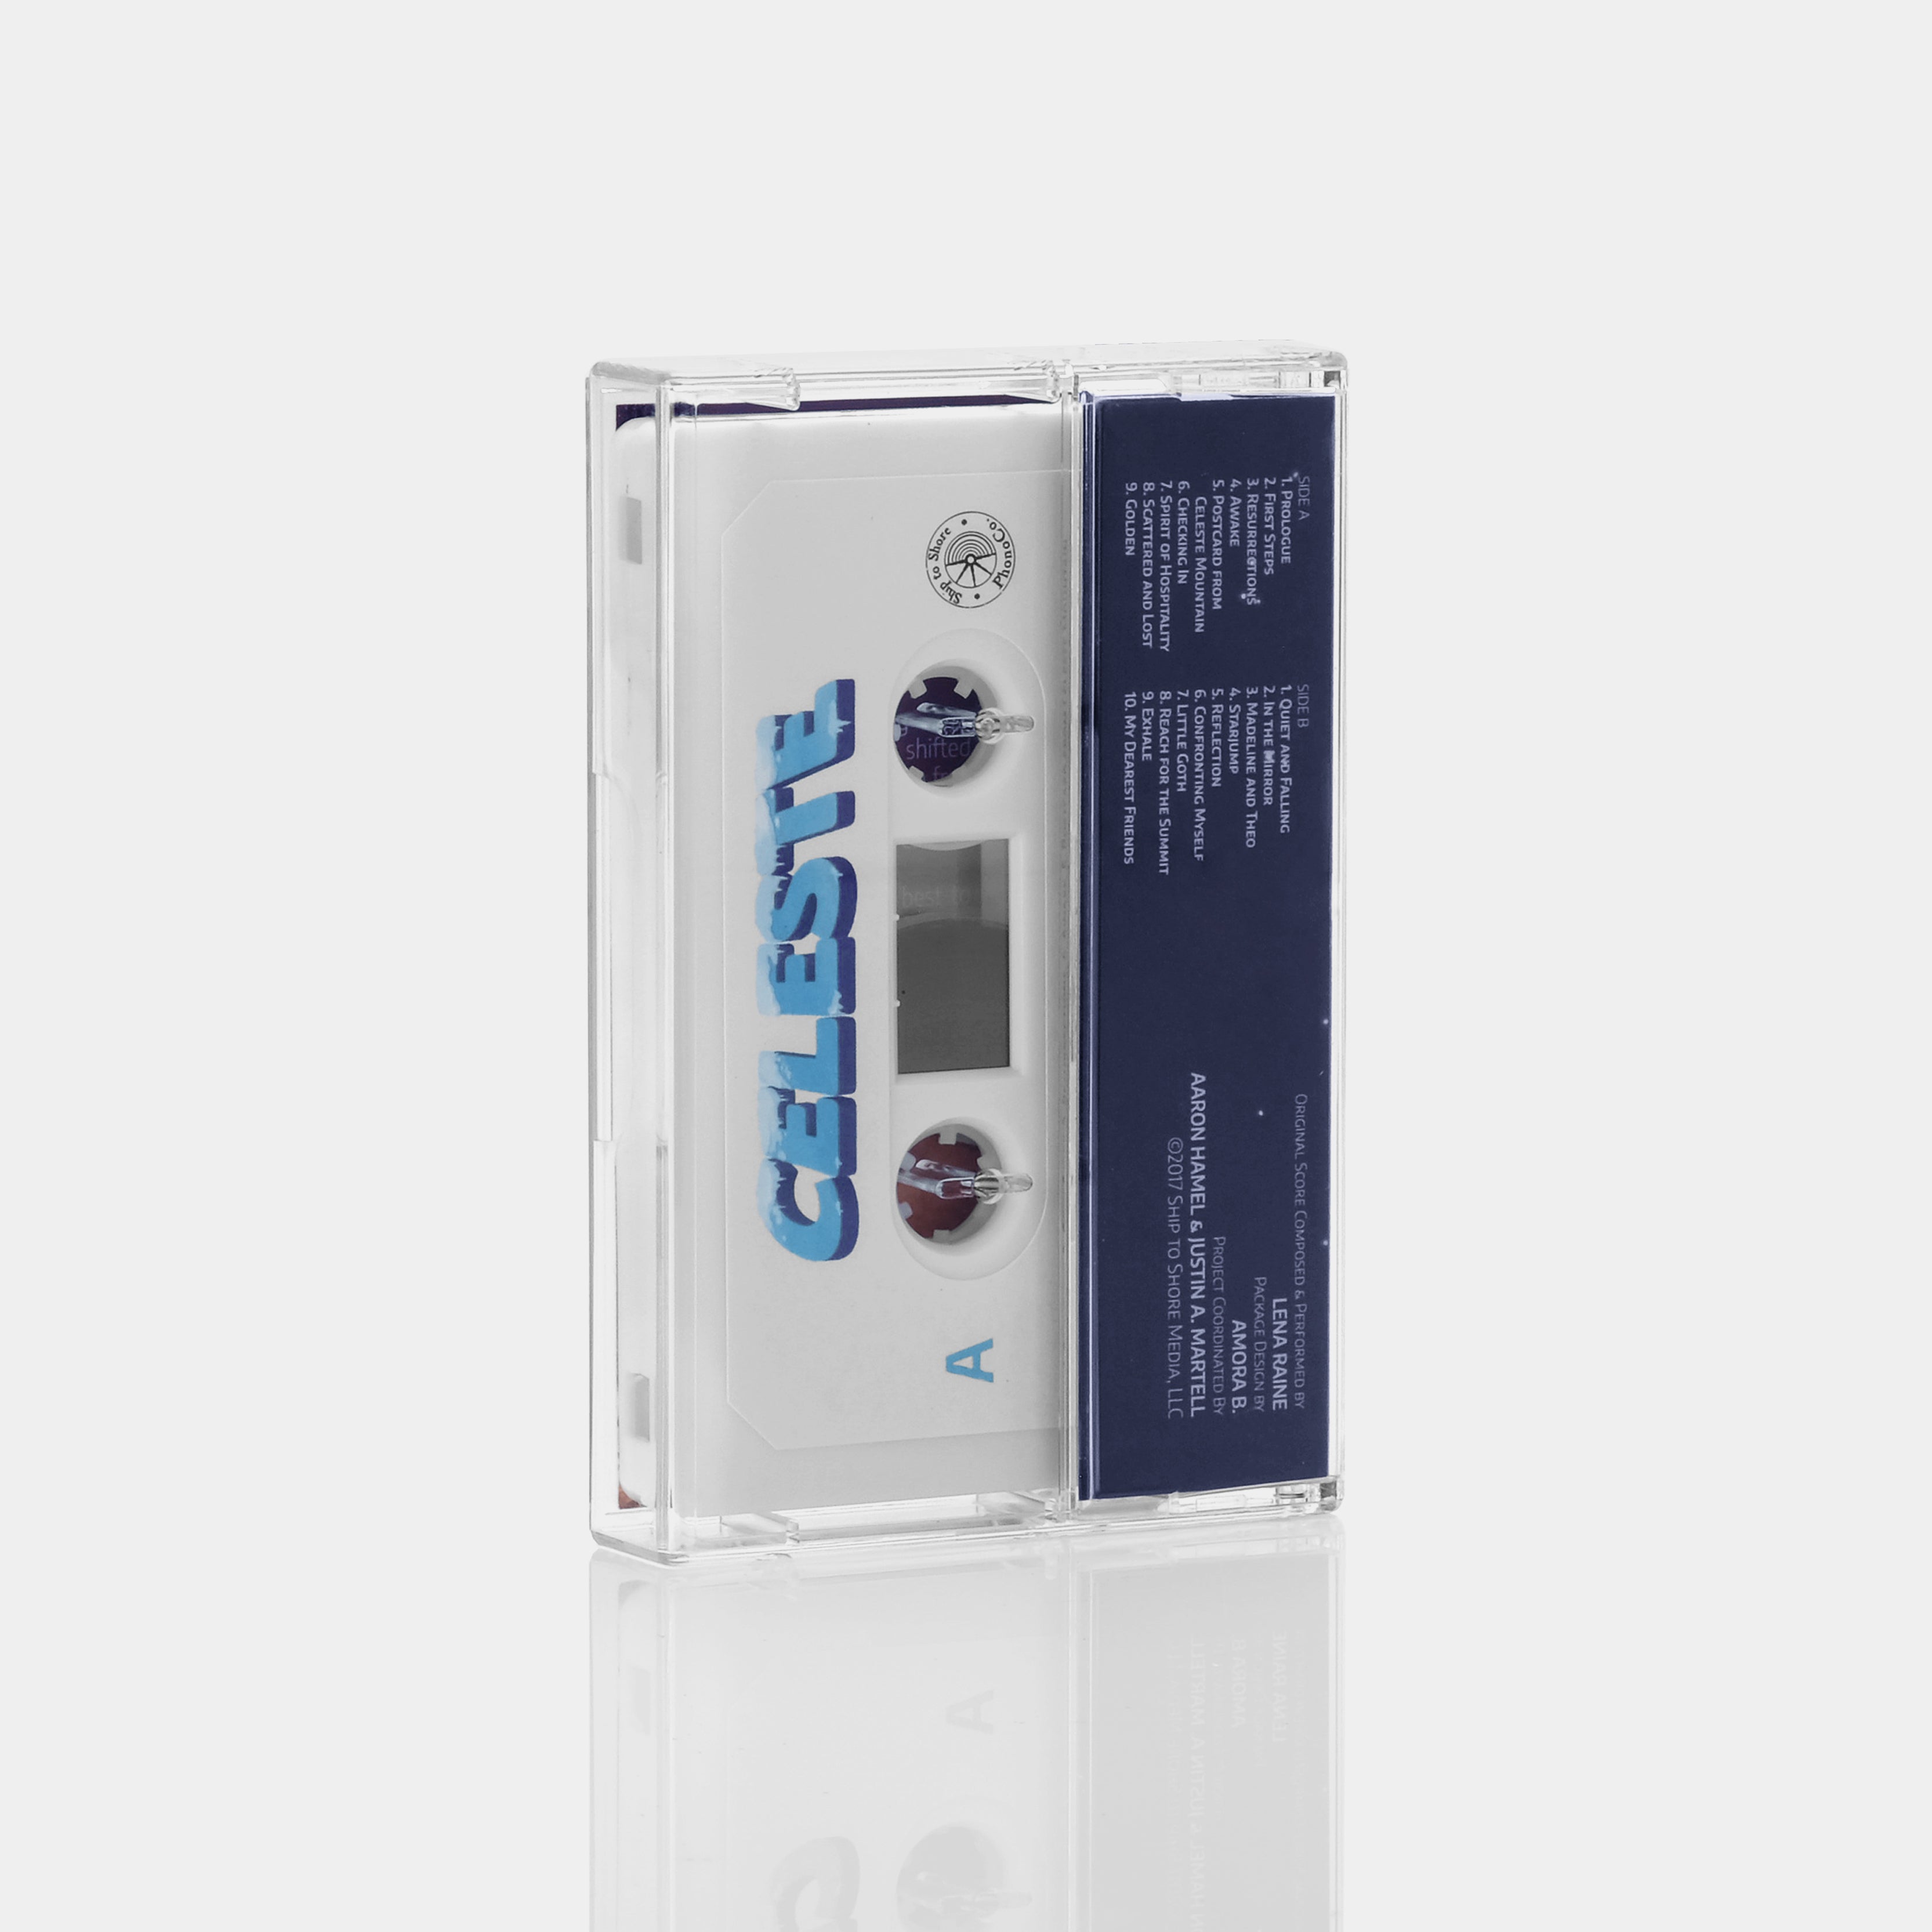 Lena Raine - Celeste (Original Video Game Soundtrack) Cassette Tape